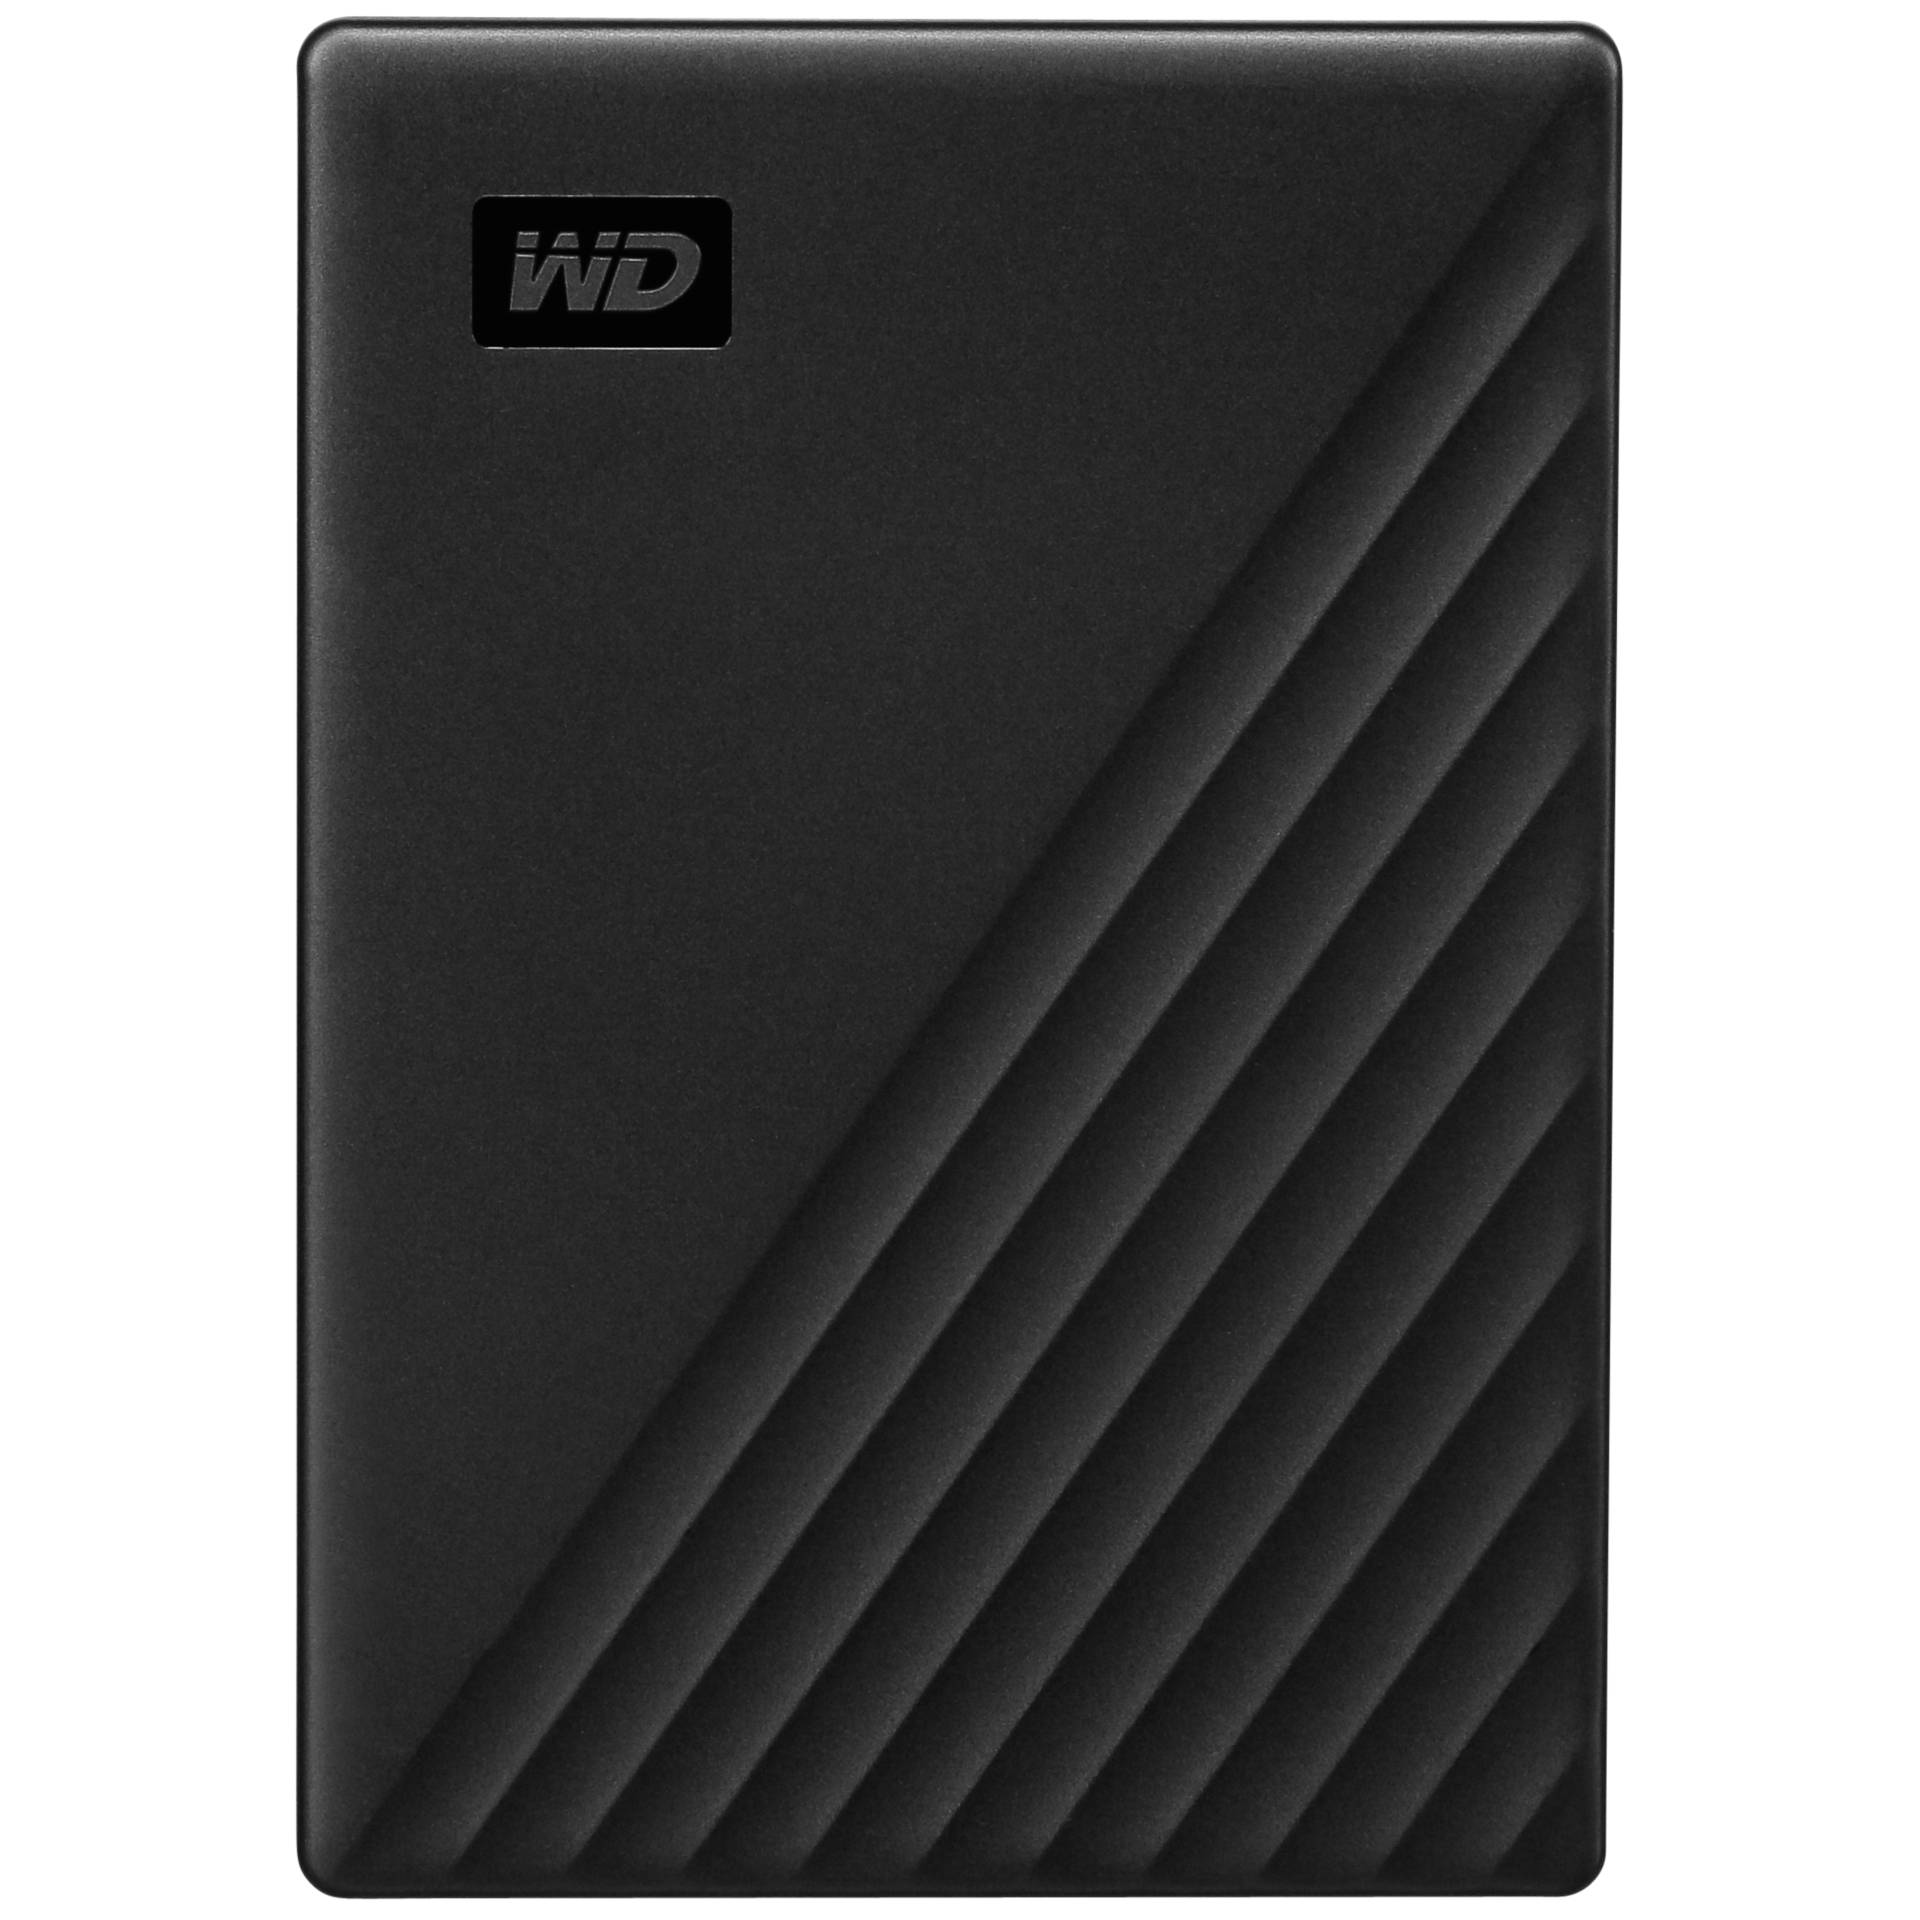 2.0 TB Western Digital WD My Passport Portable Storage schwarz, USB 3.0 Micro-B